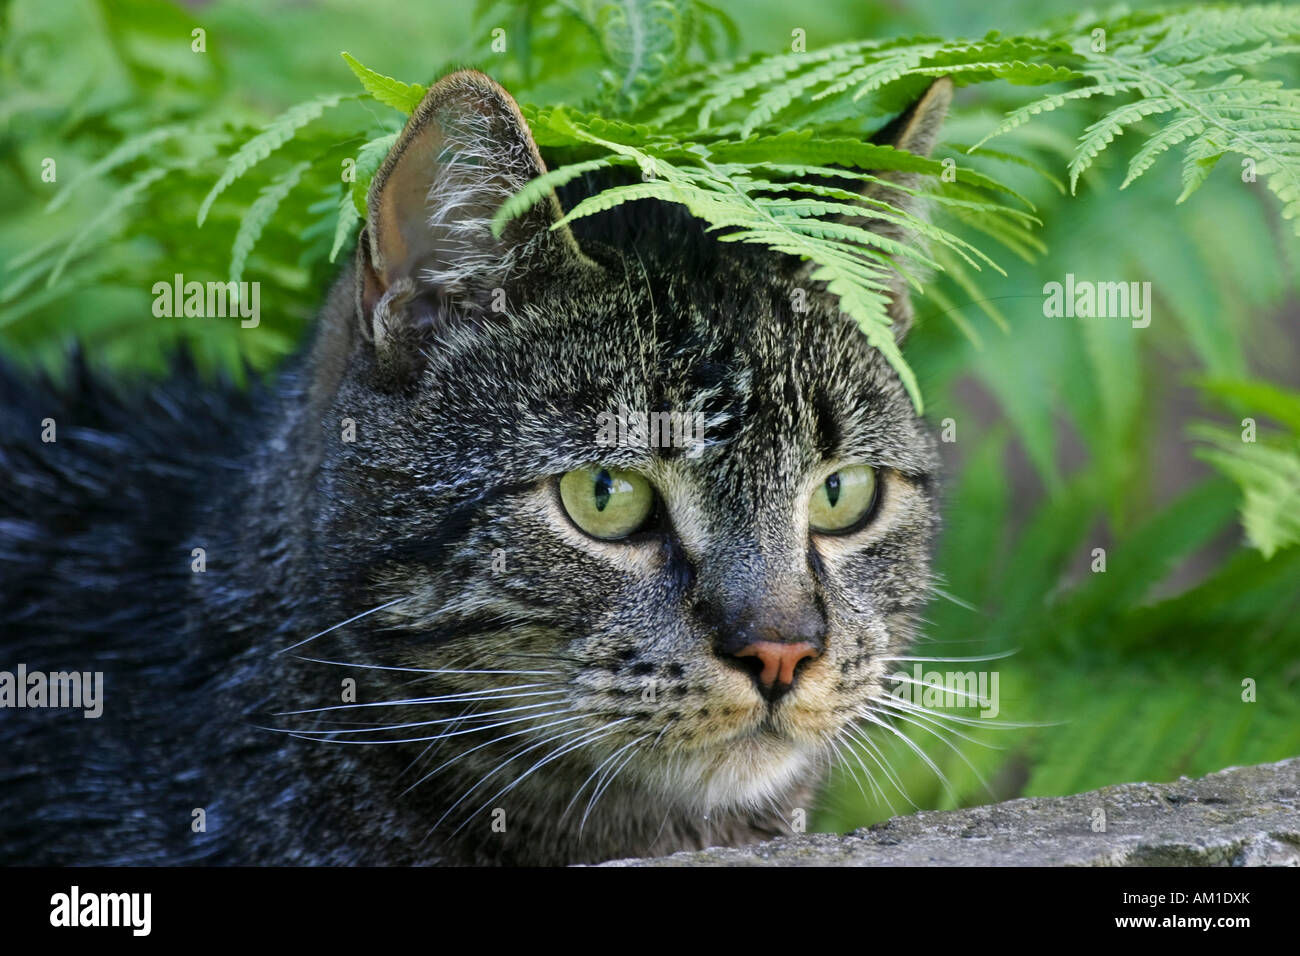 European shorthair cat hidden under a fern Stock Photo